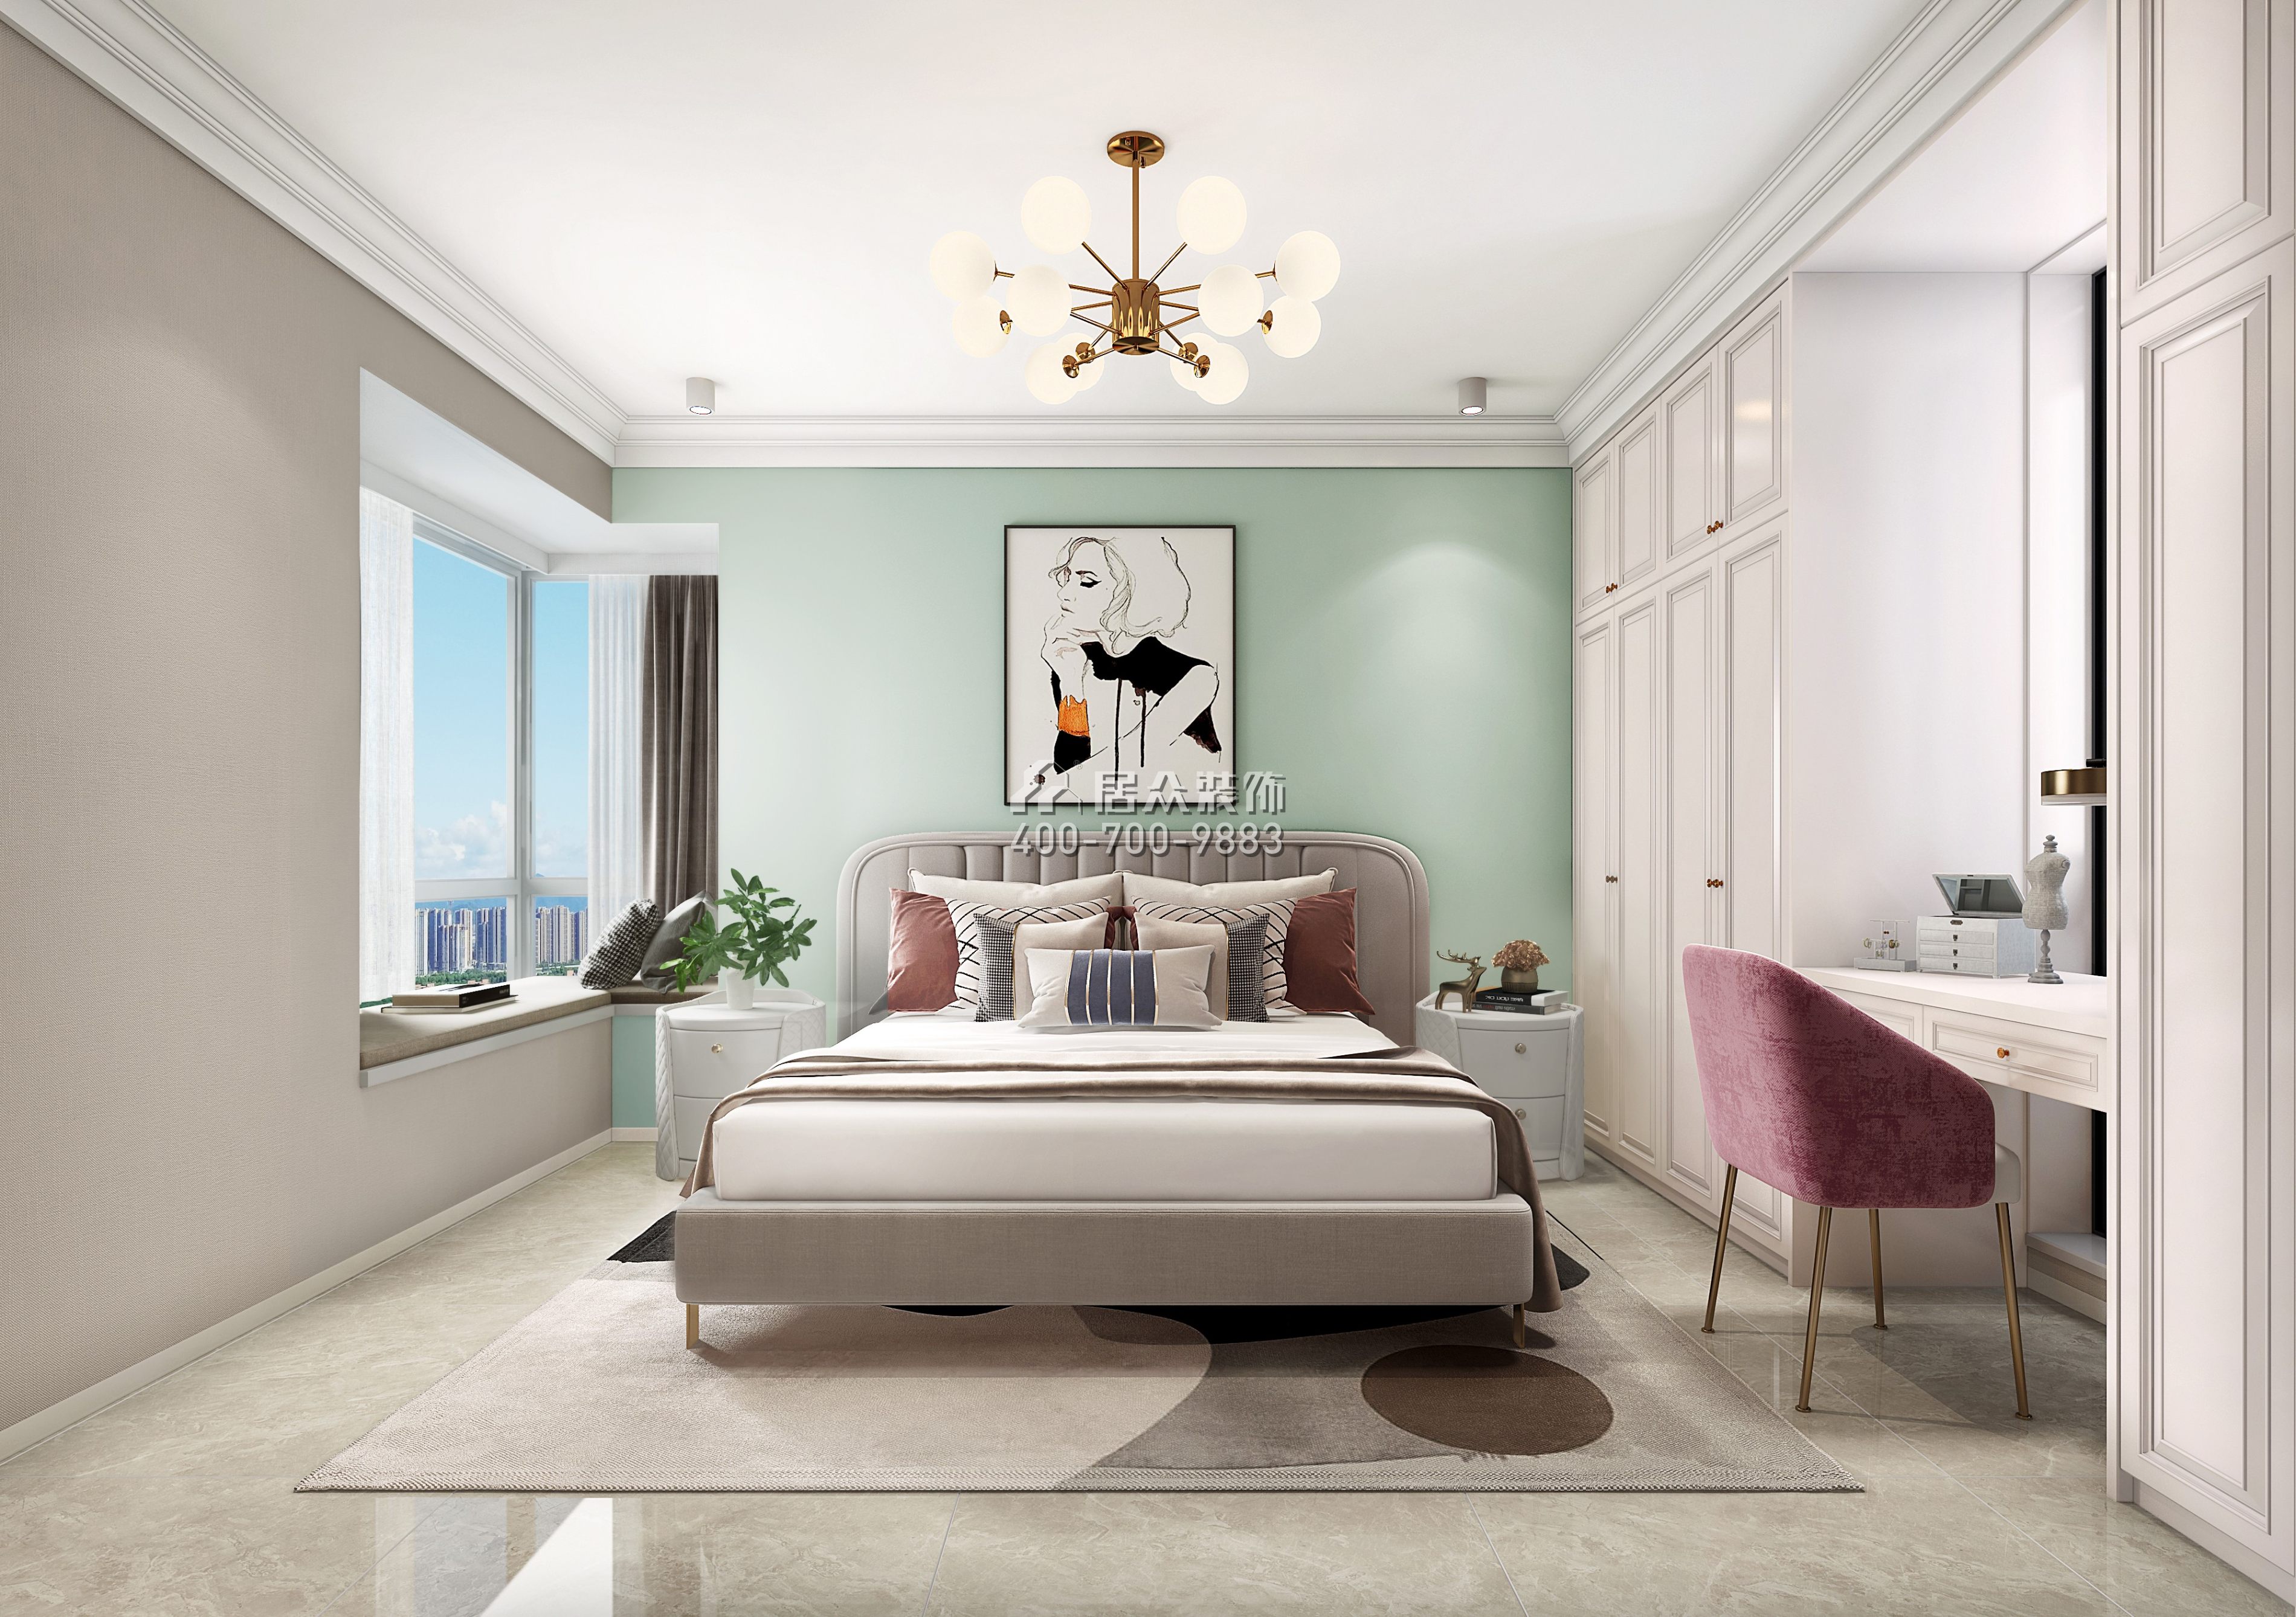 郁金香家园100平方米美式风格平层户型卧室kok电竞平台效果图